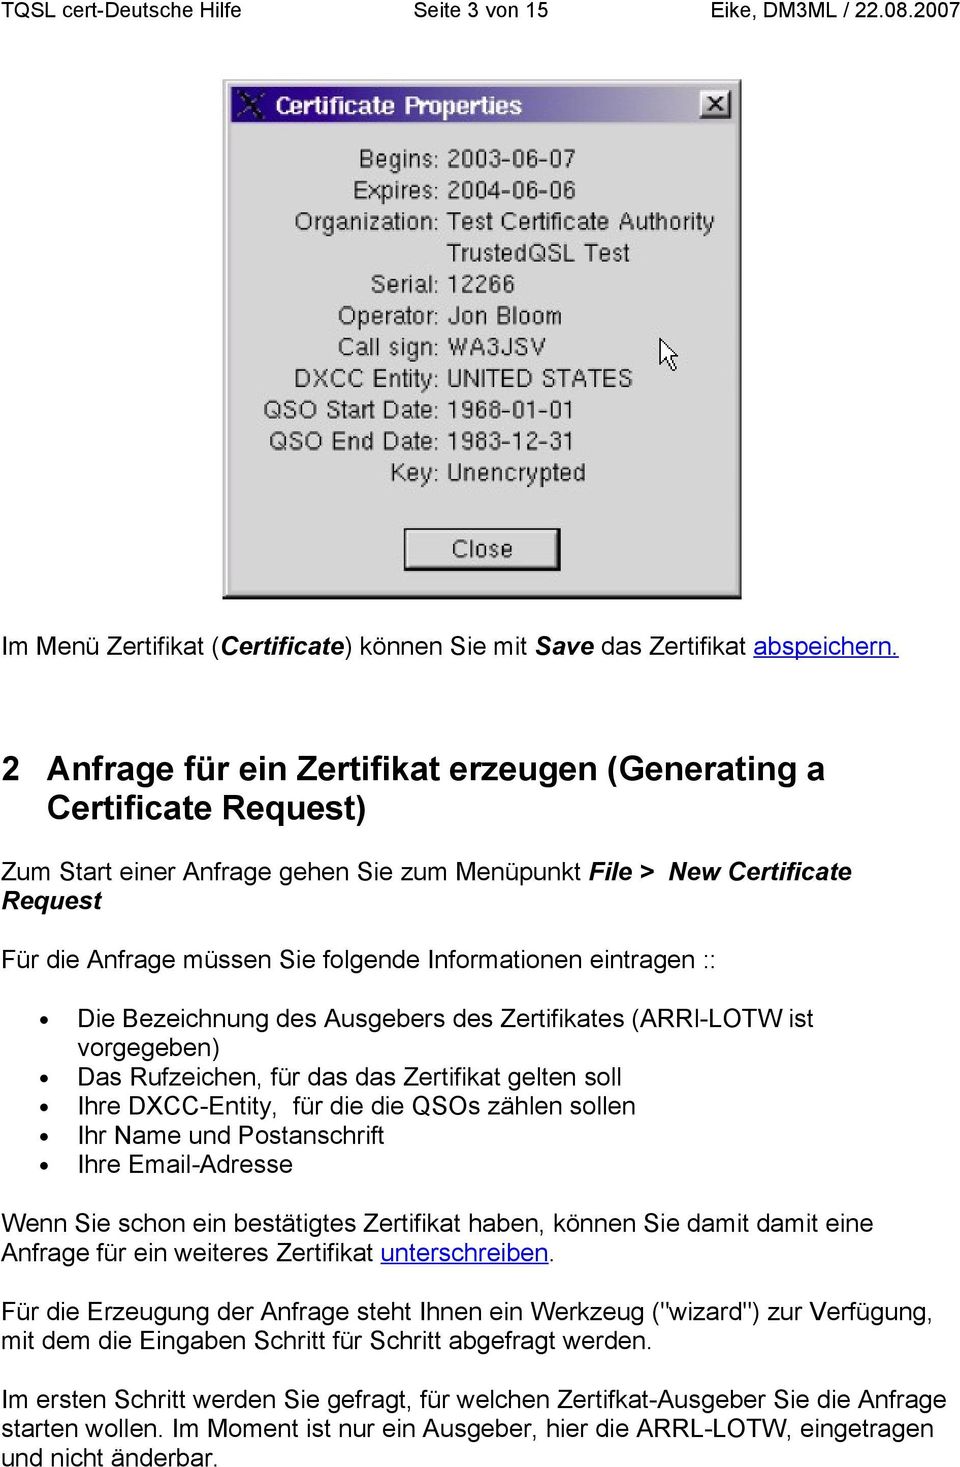 Informationen eintragen :: Die Bezeichnung des Ausgebers des Zertifikates (ARRl-LOTW ist vorgegeben) Das Rufzeichen, für das das Zertifikat gelten soll Ihre DXCC-Entity, für die die QSOs zählen